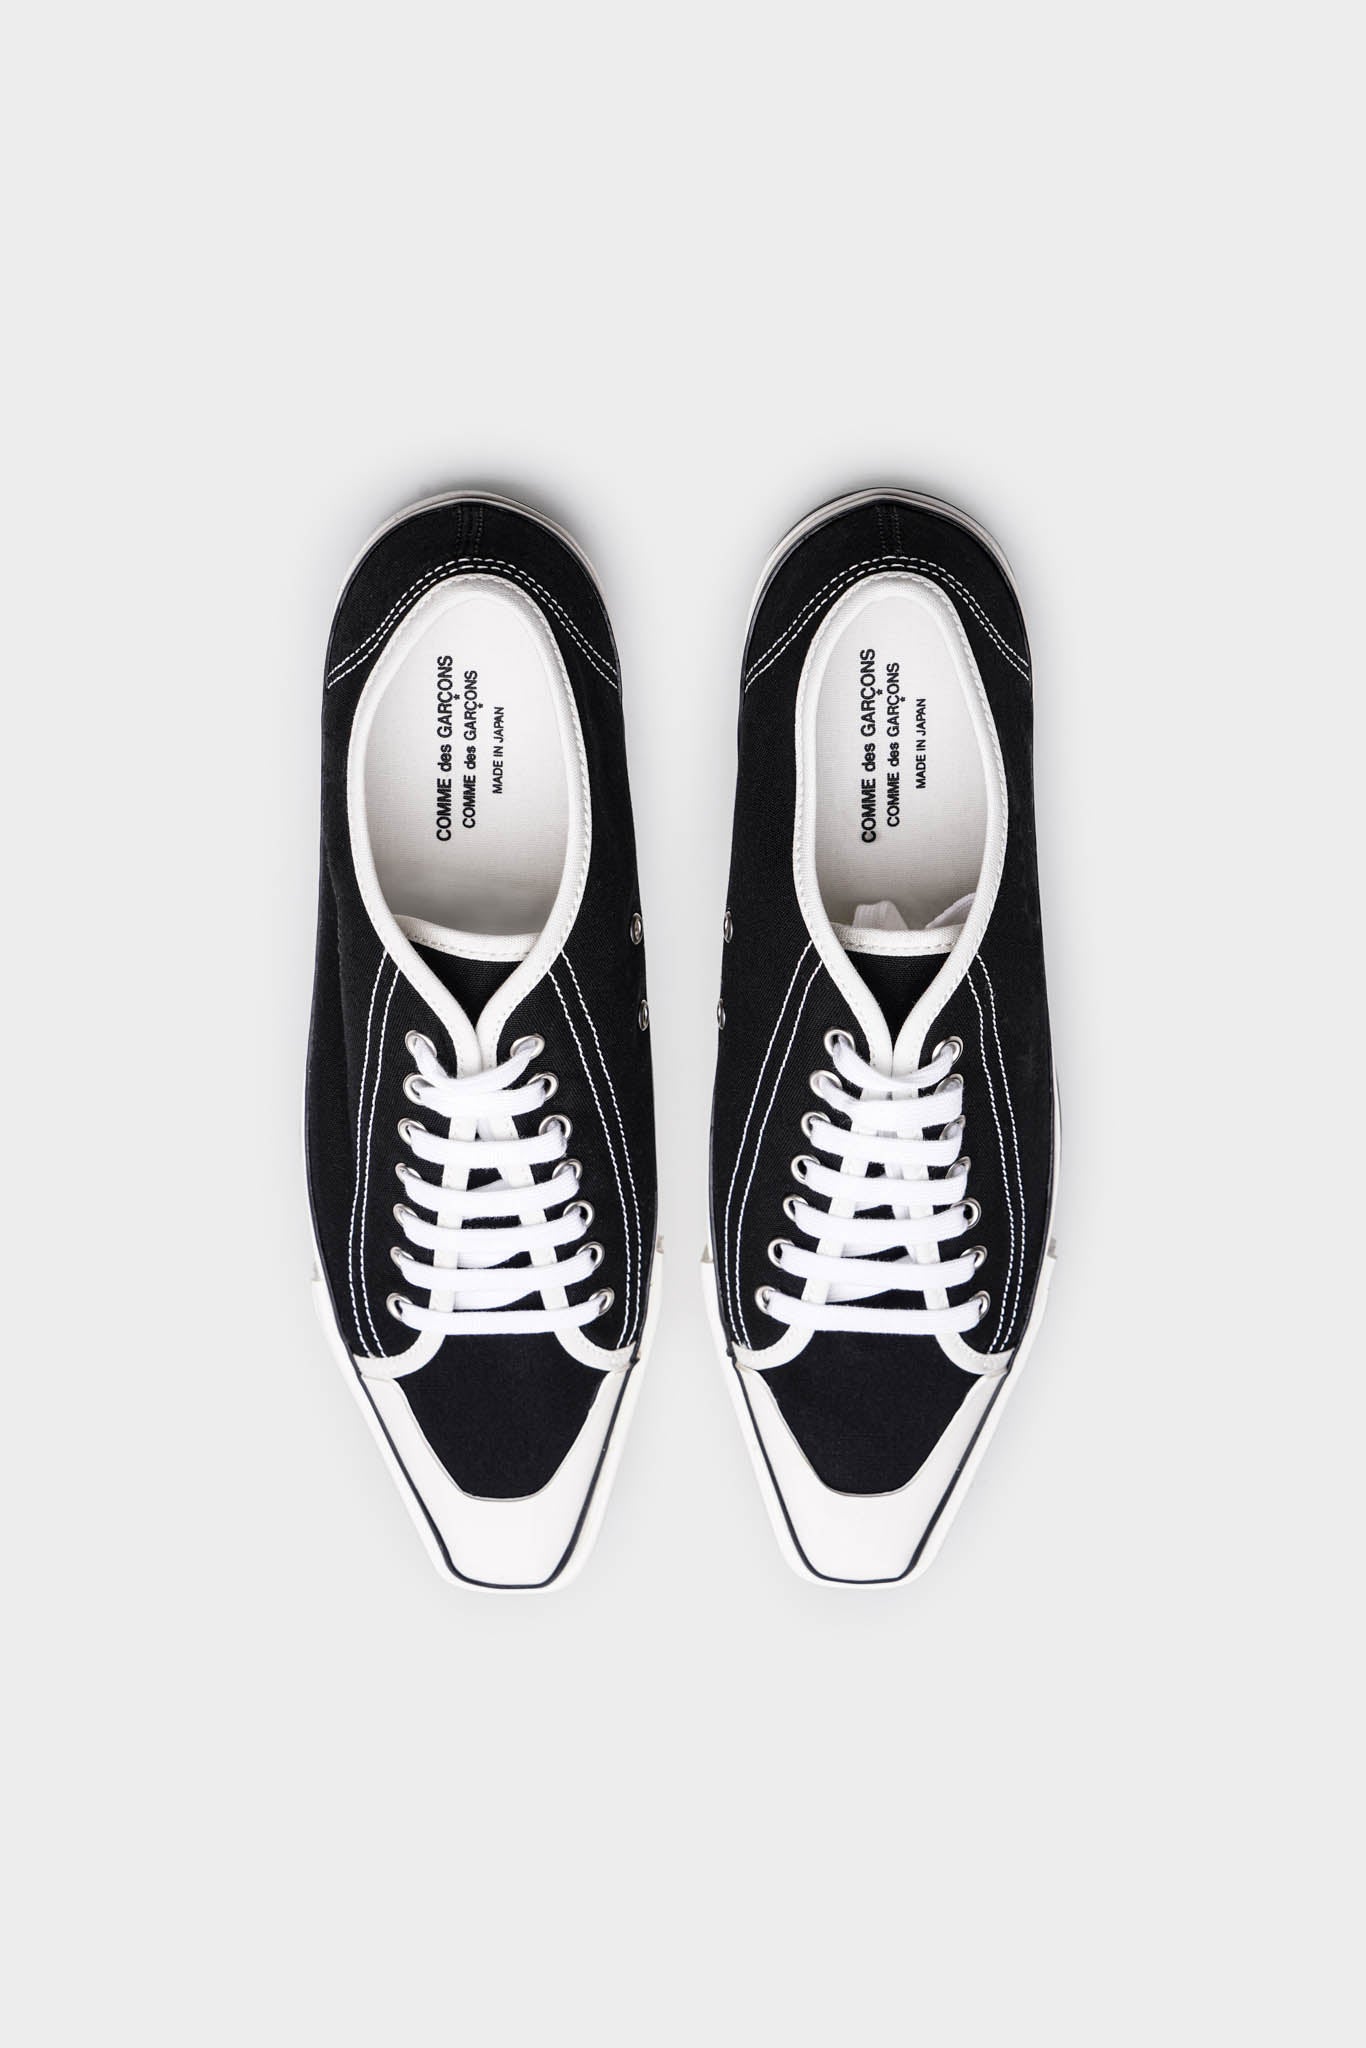 Selectshop FRAME - COMME DES GARÇONS COMME DES GARÇONS Black Pointed Low-Top Sneakers Footwear Dubai